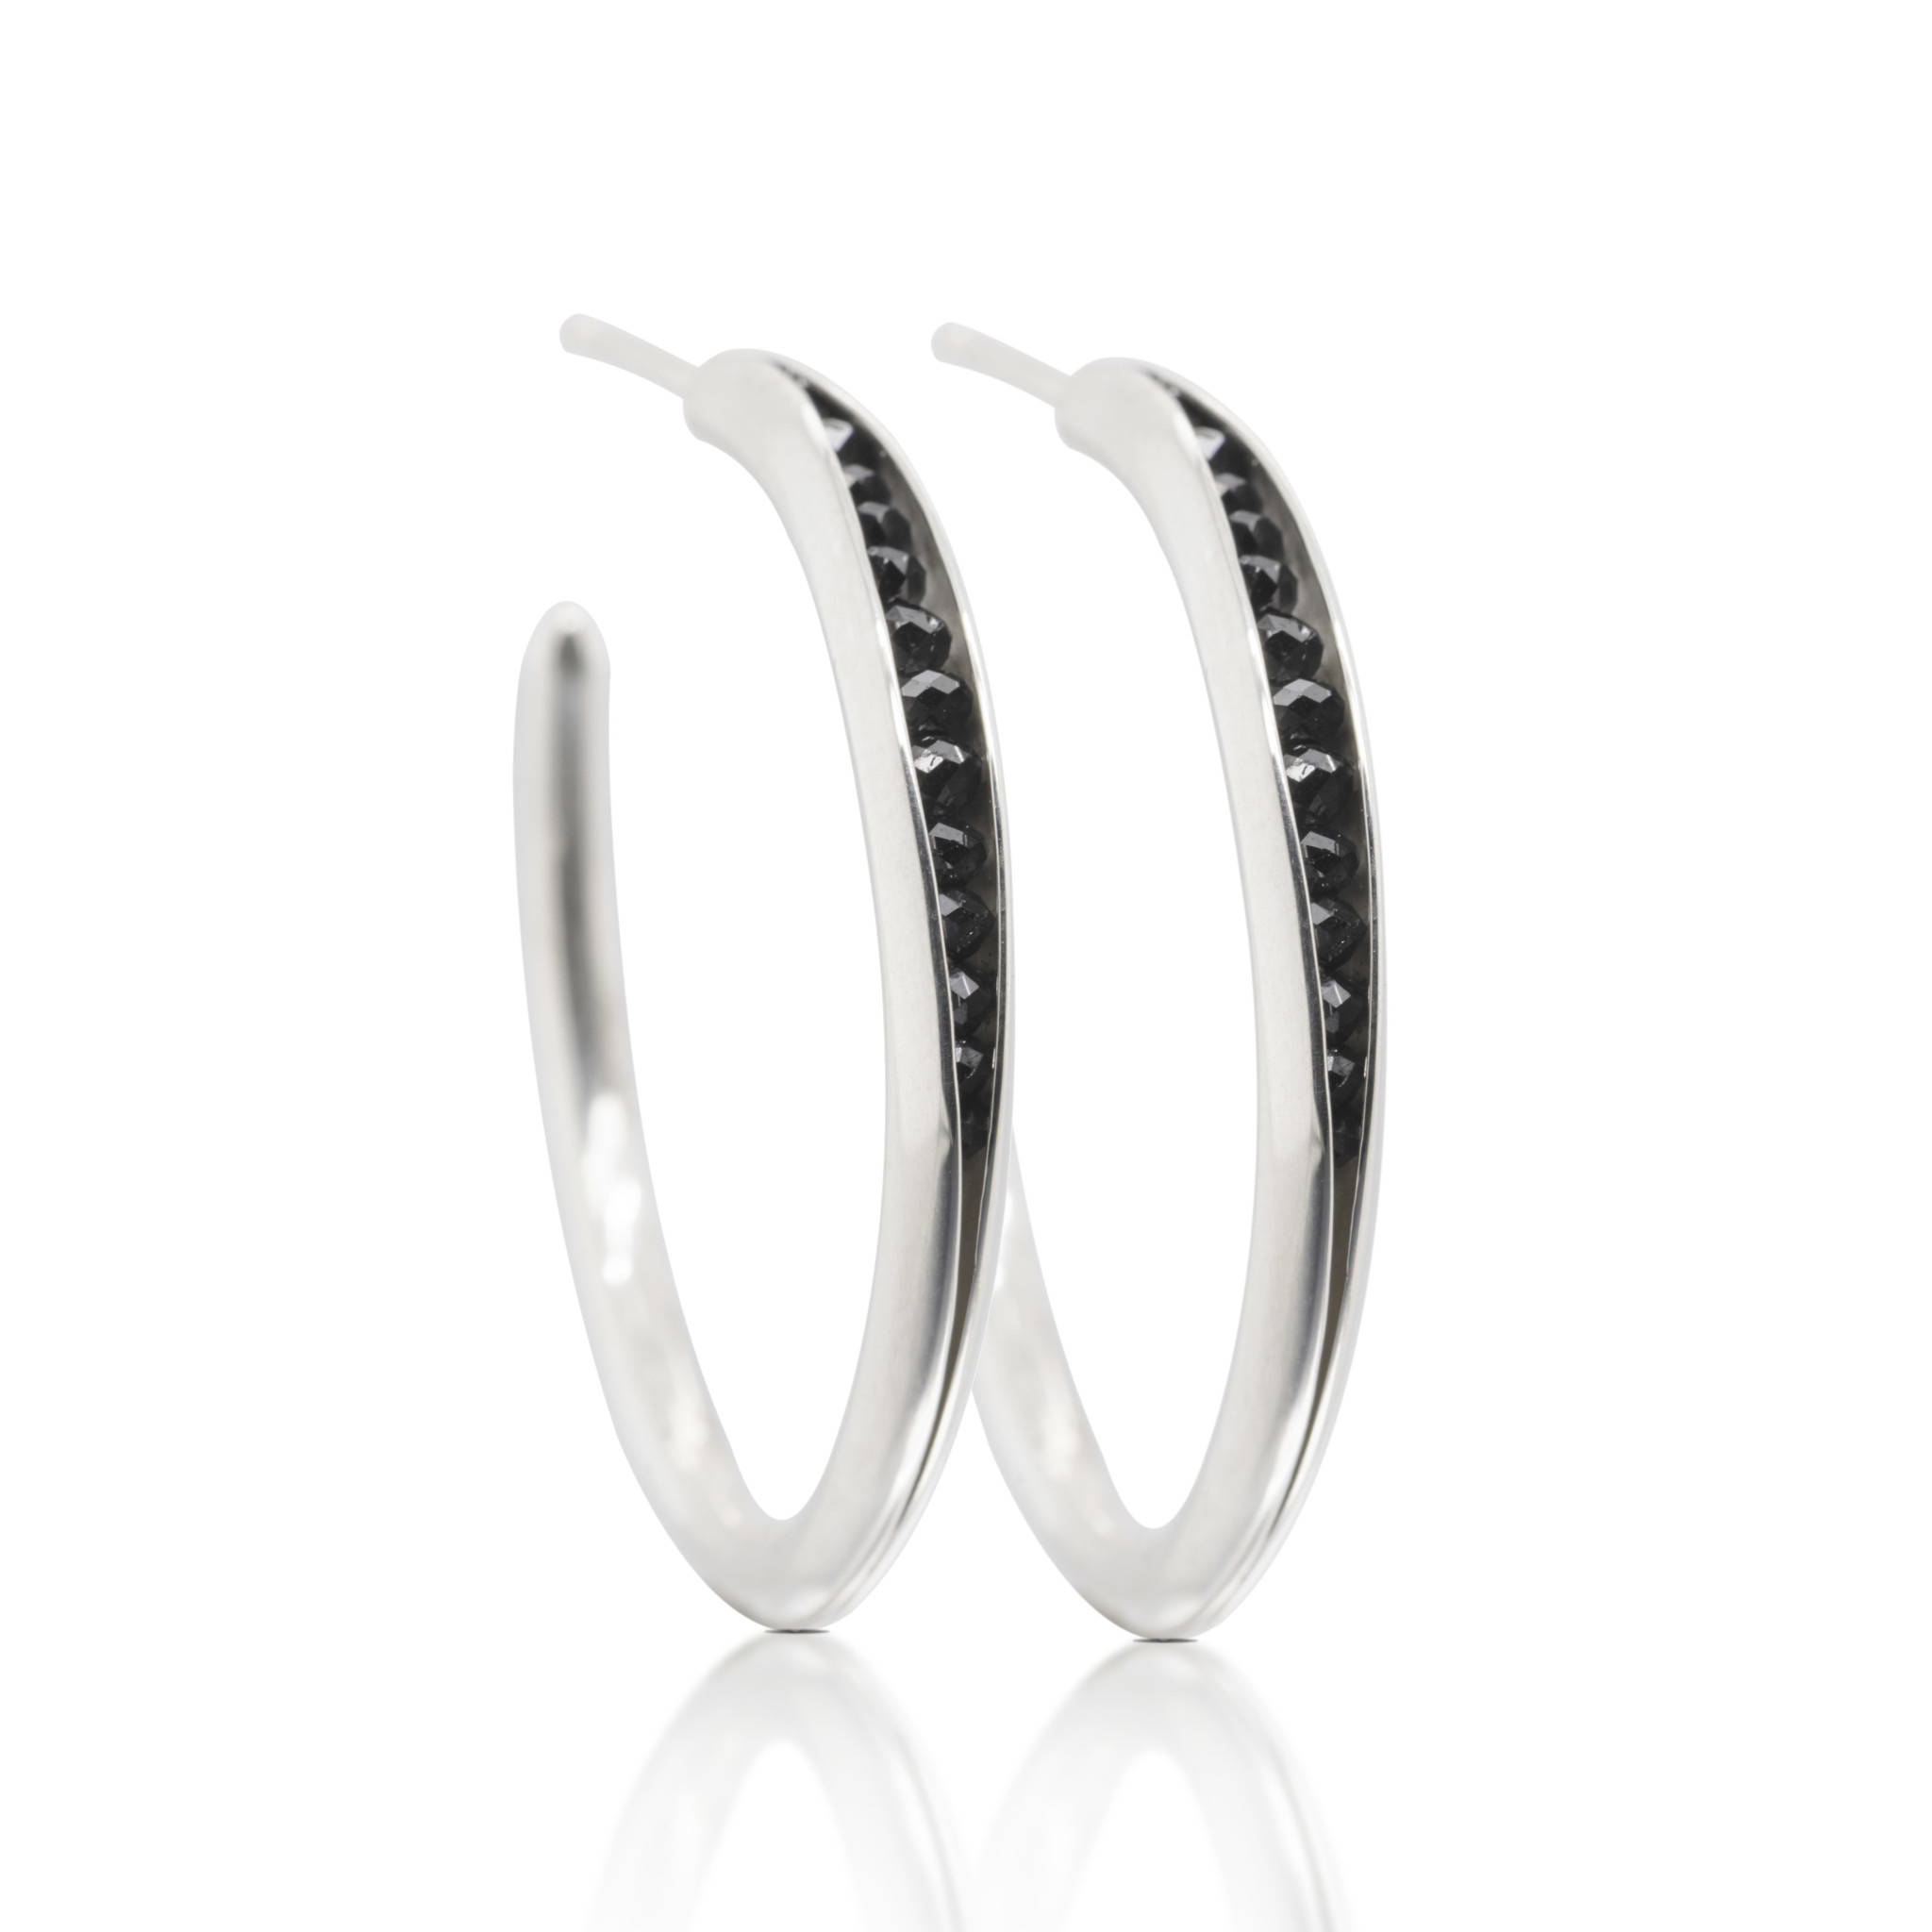 Polished hoop earrings with black diamond rondels, 34mm diameter, sterling silver